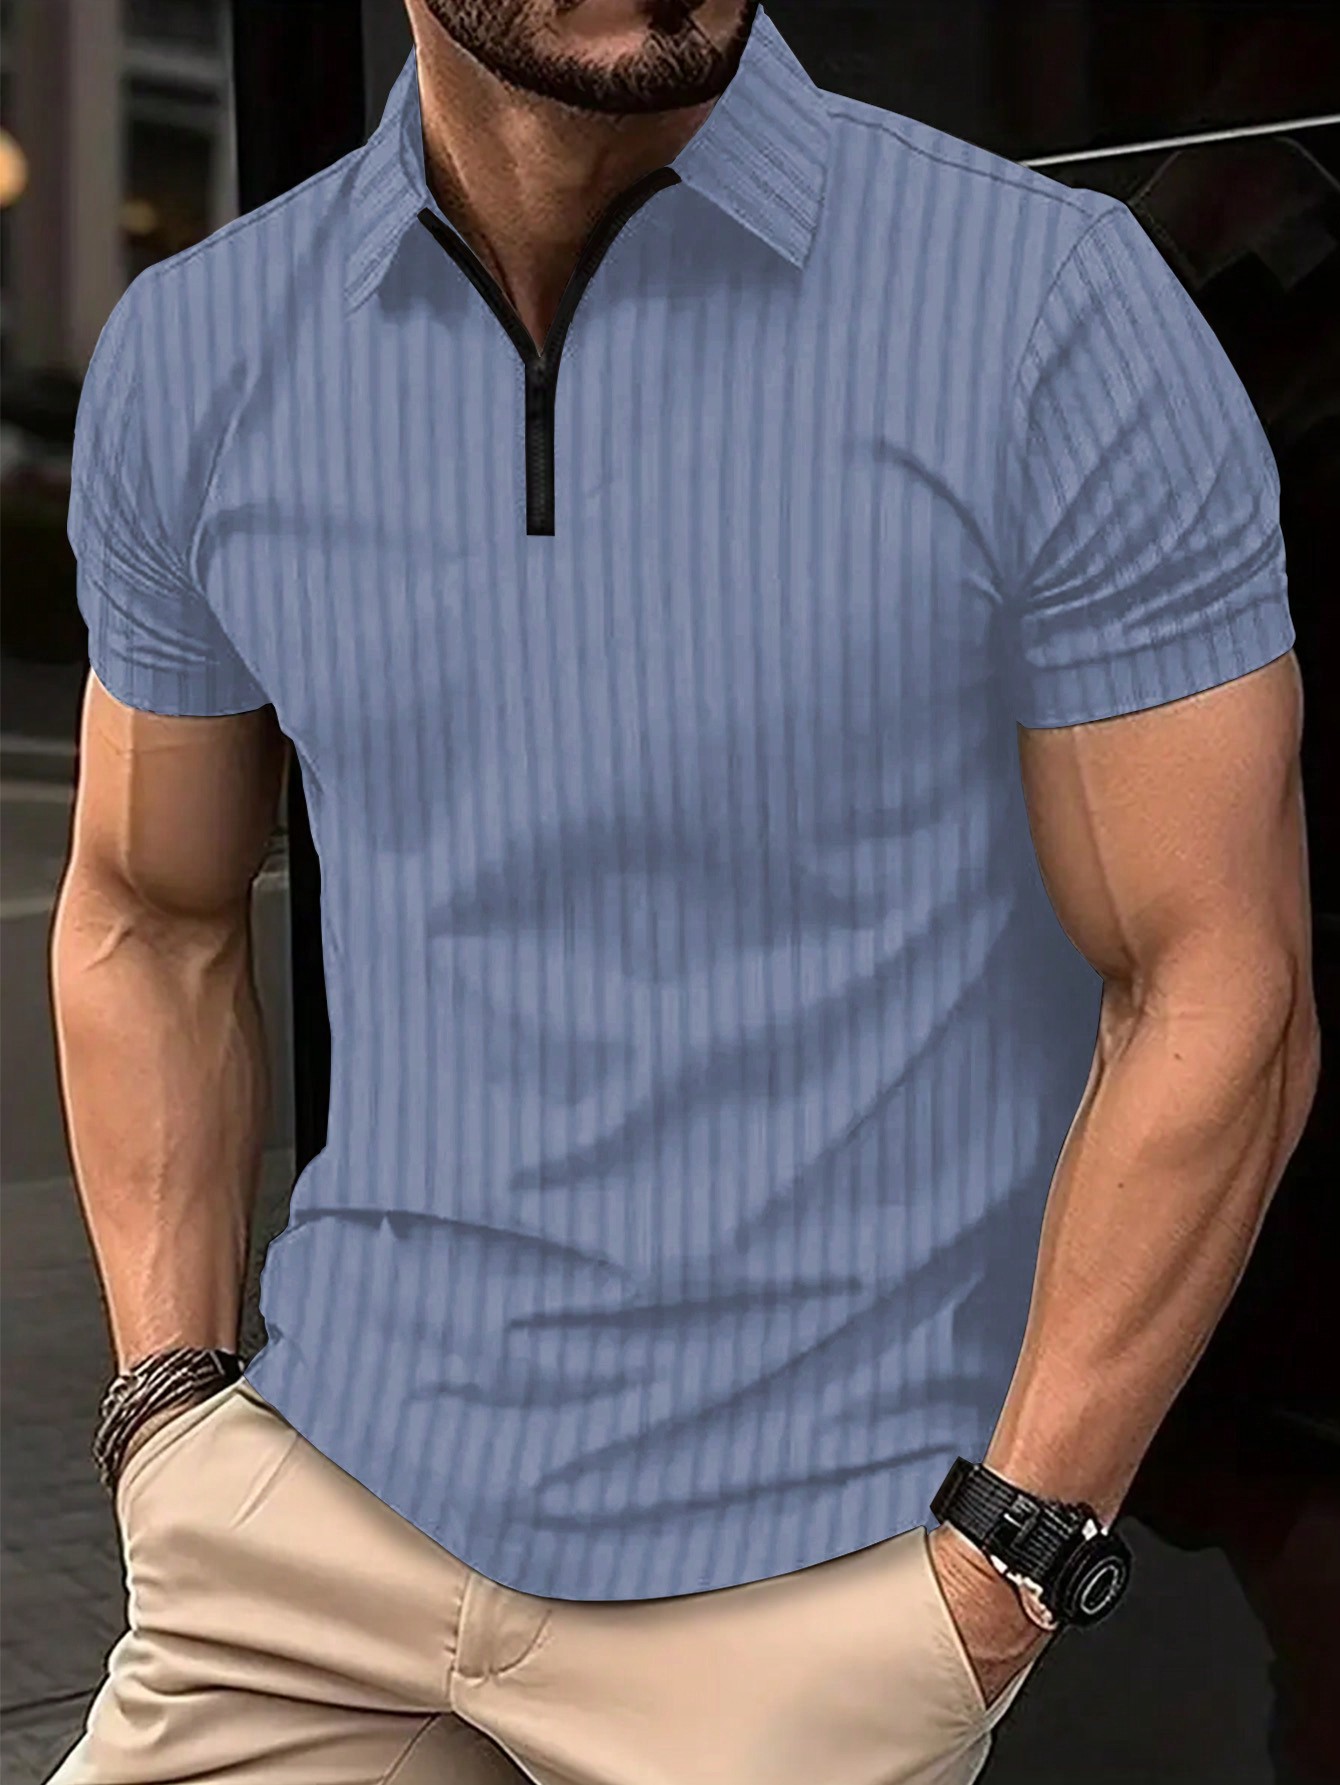 Мужская полосатая рубашка-поло с молнией до половины и короткими рукавами Manfinity Homme больших размеров, голубые